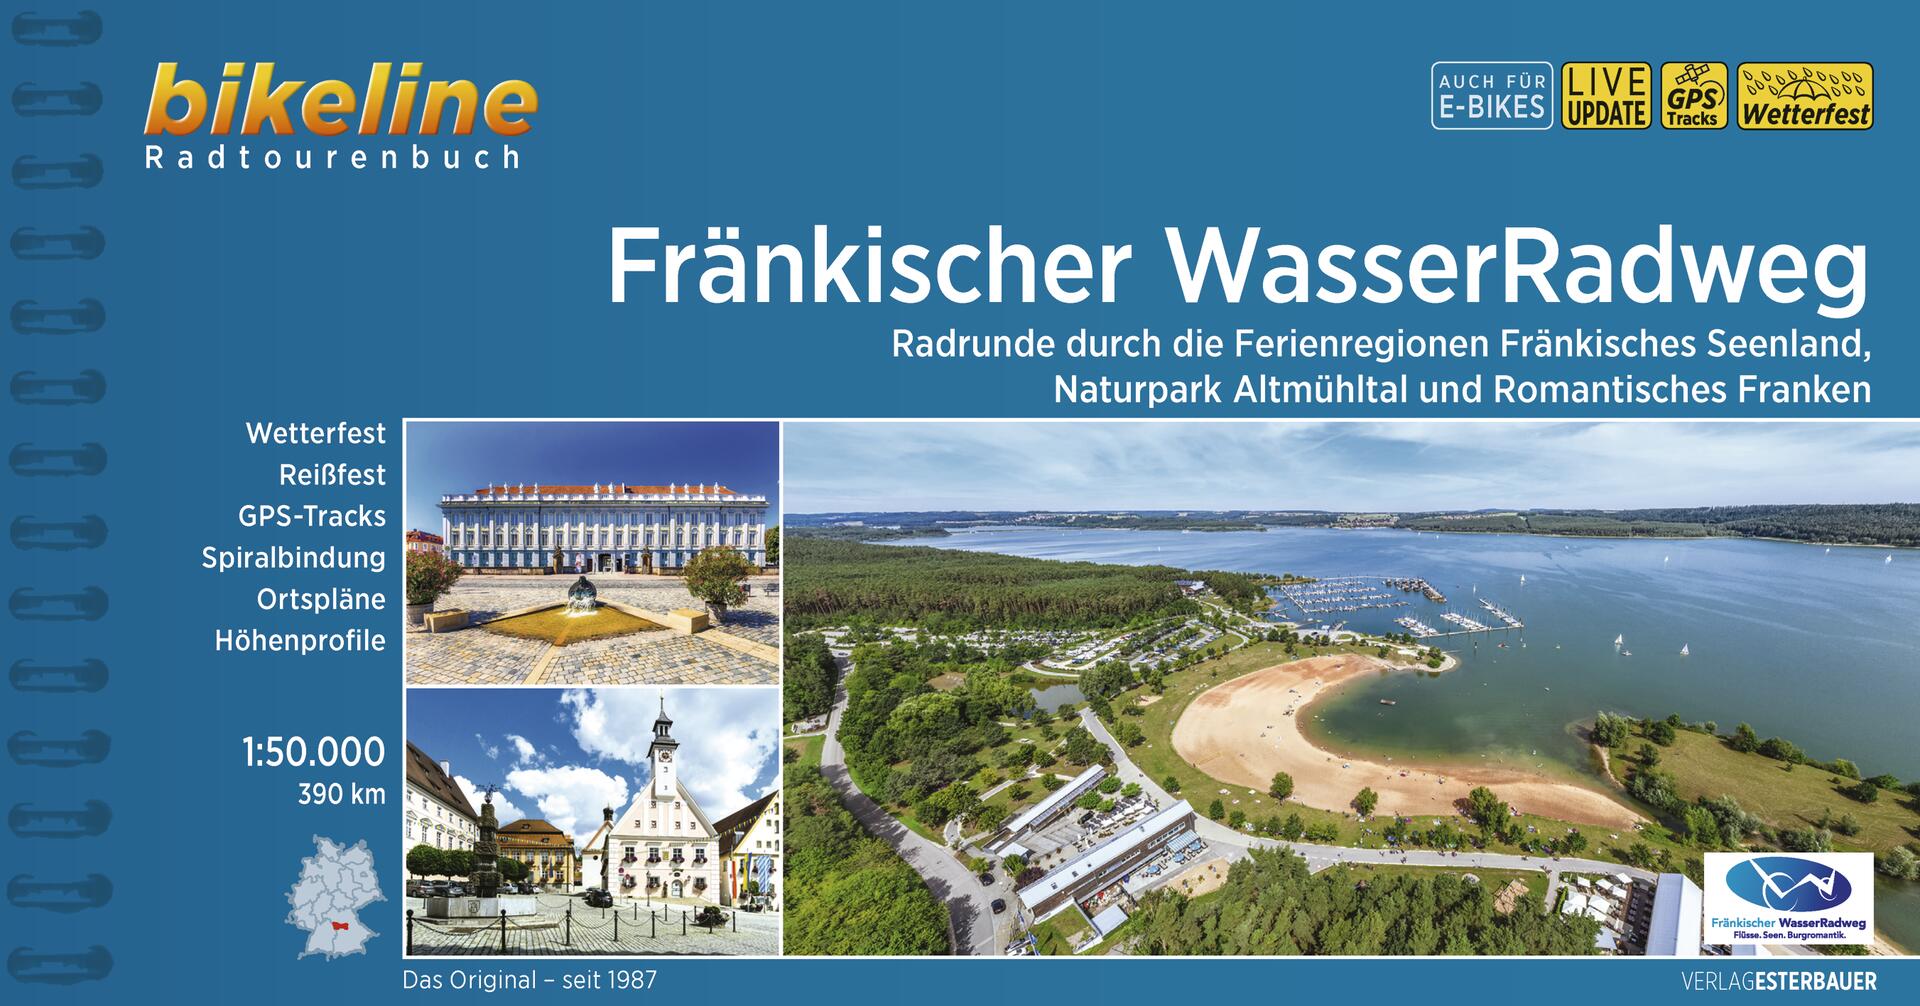 Online bestellen: Fietsgids Bikeline Fränkischer WasserRadweg | Esterbauer